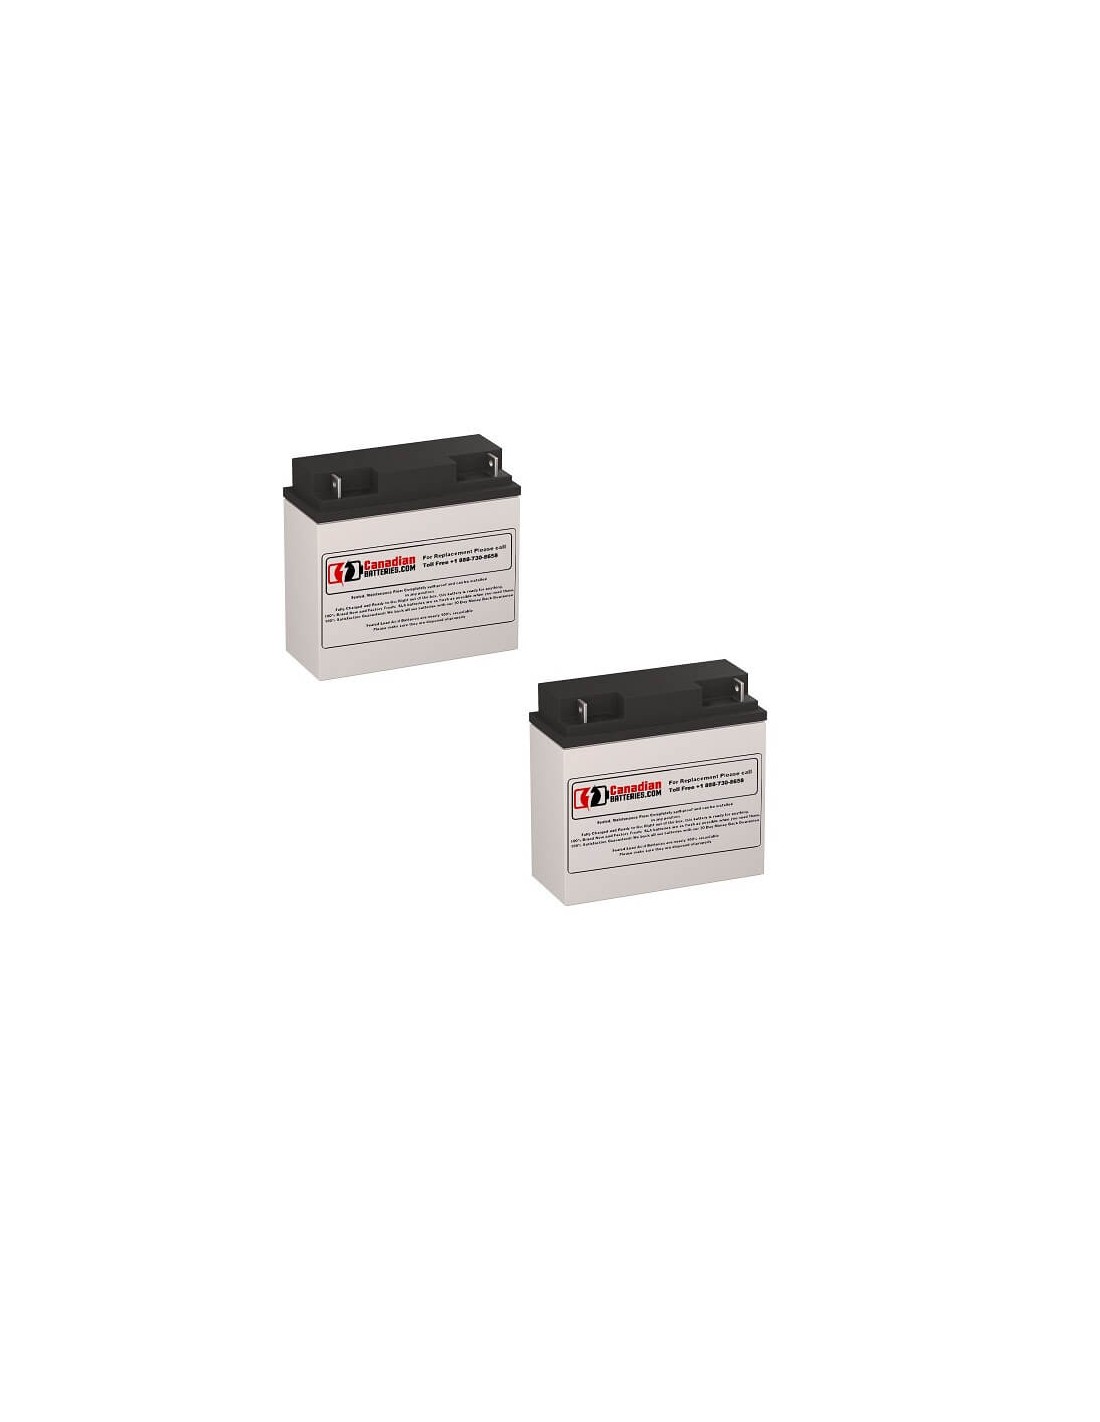 Batteries for Belkin Pro F6c100-4 UPS, 2 x 12V, 18Ah - 216Wh